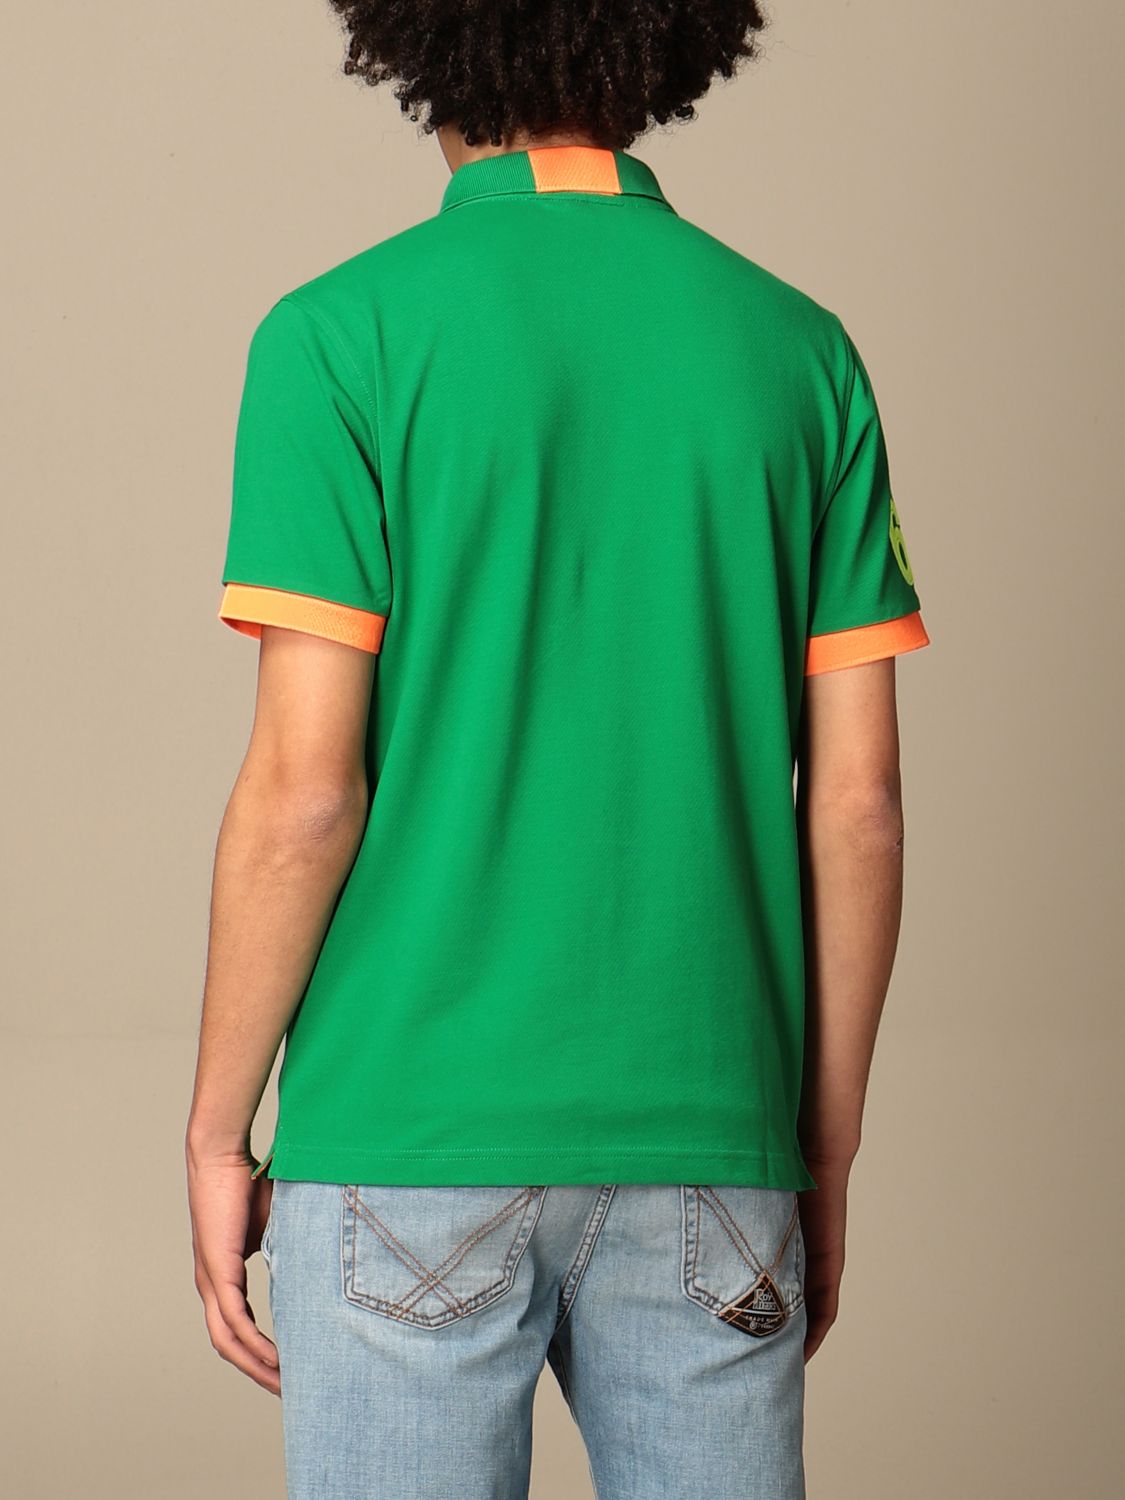 Polo shirt Sun 68: Sun 68 cotton polo shirt with logo green 2